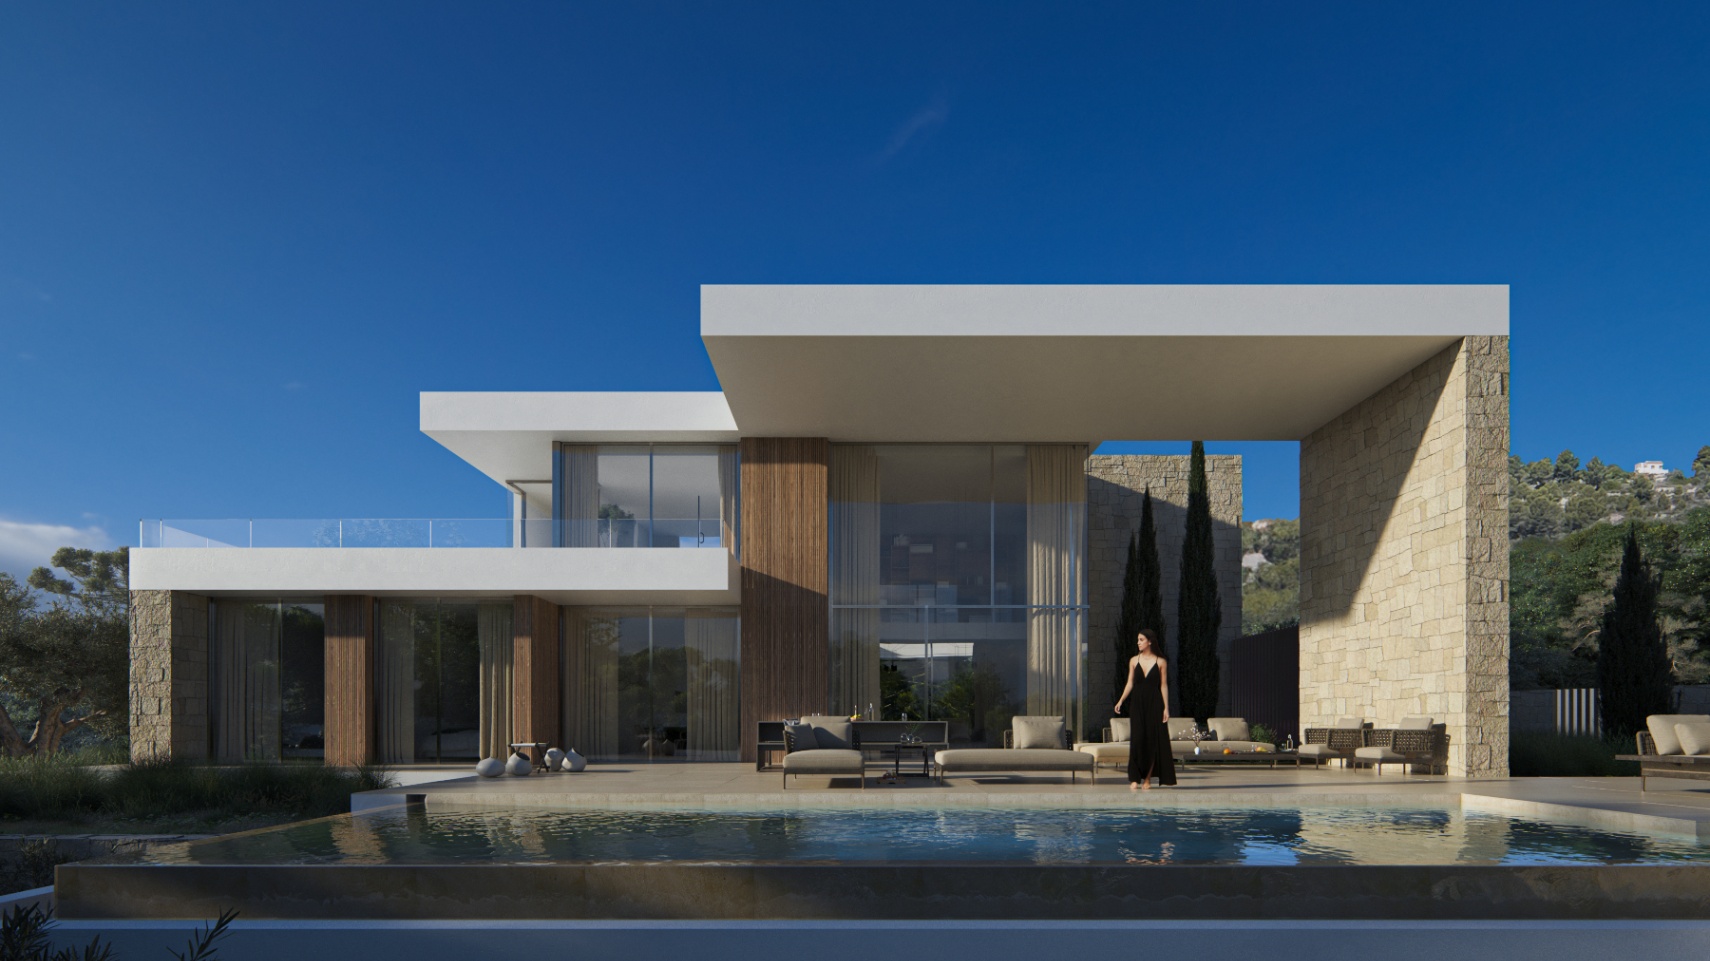 Spectaculaire nieuwbouw villa op drie niveaus